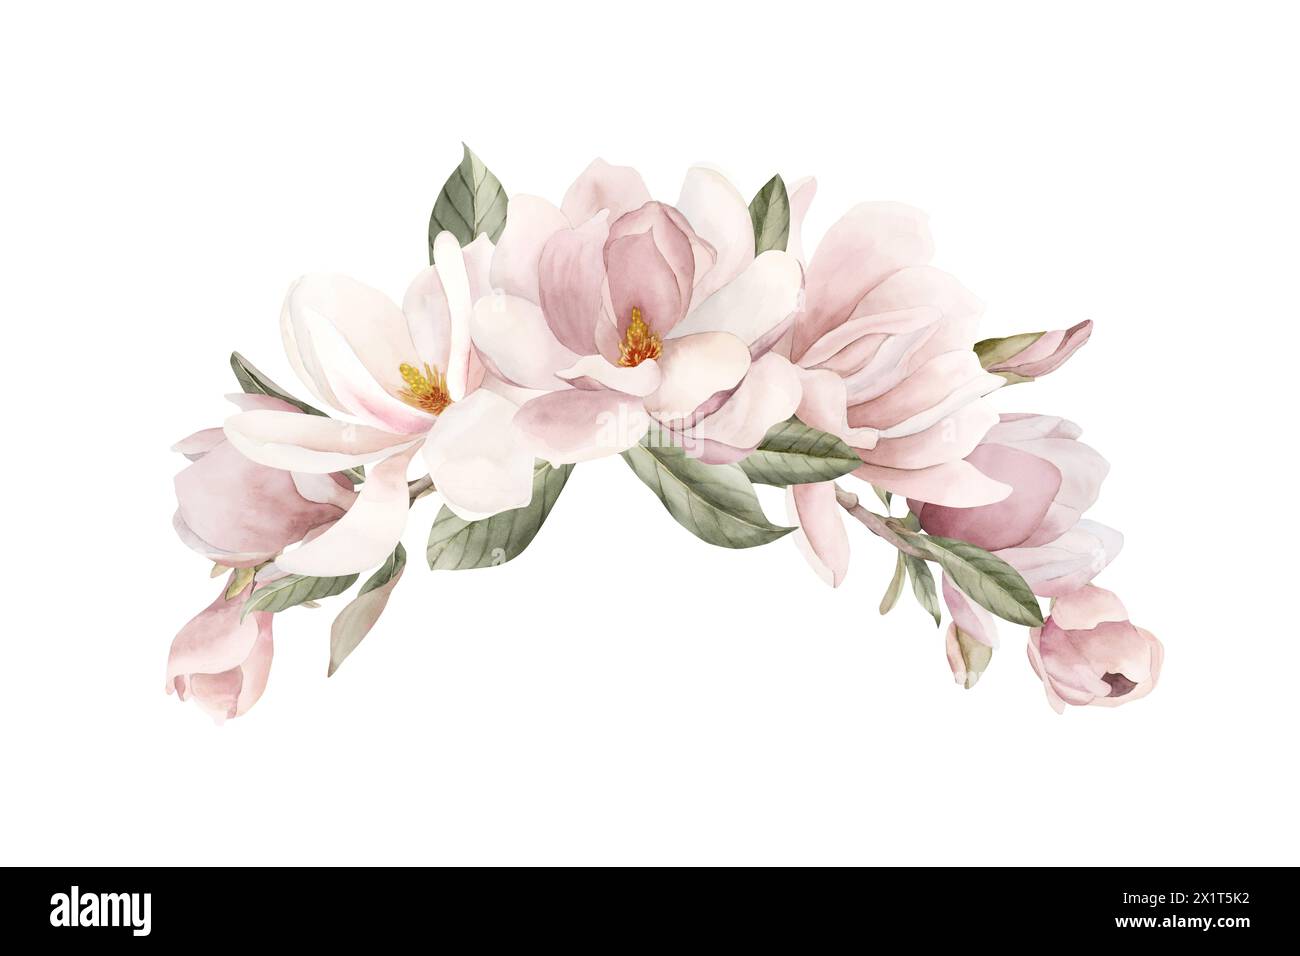 Fiori di magnolia rosa chiaro, gemme, rametti e foglie. Illustrazione ad acquerello floreale dipinta a mano isolata su sfondo bianco. Composizione della molla Foto Stock